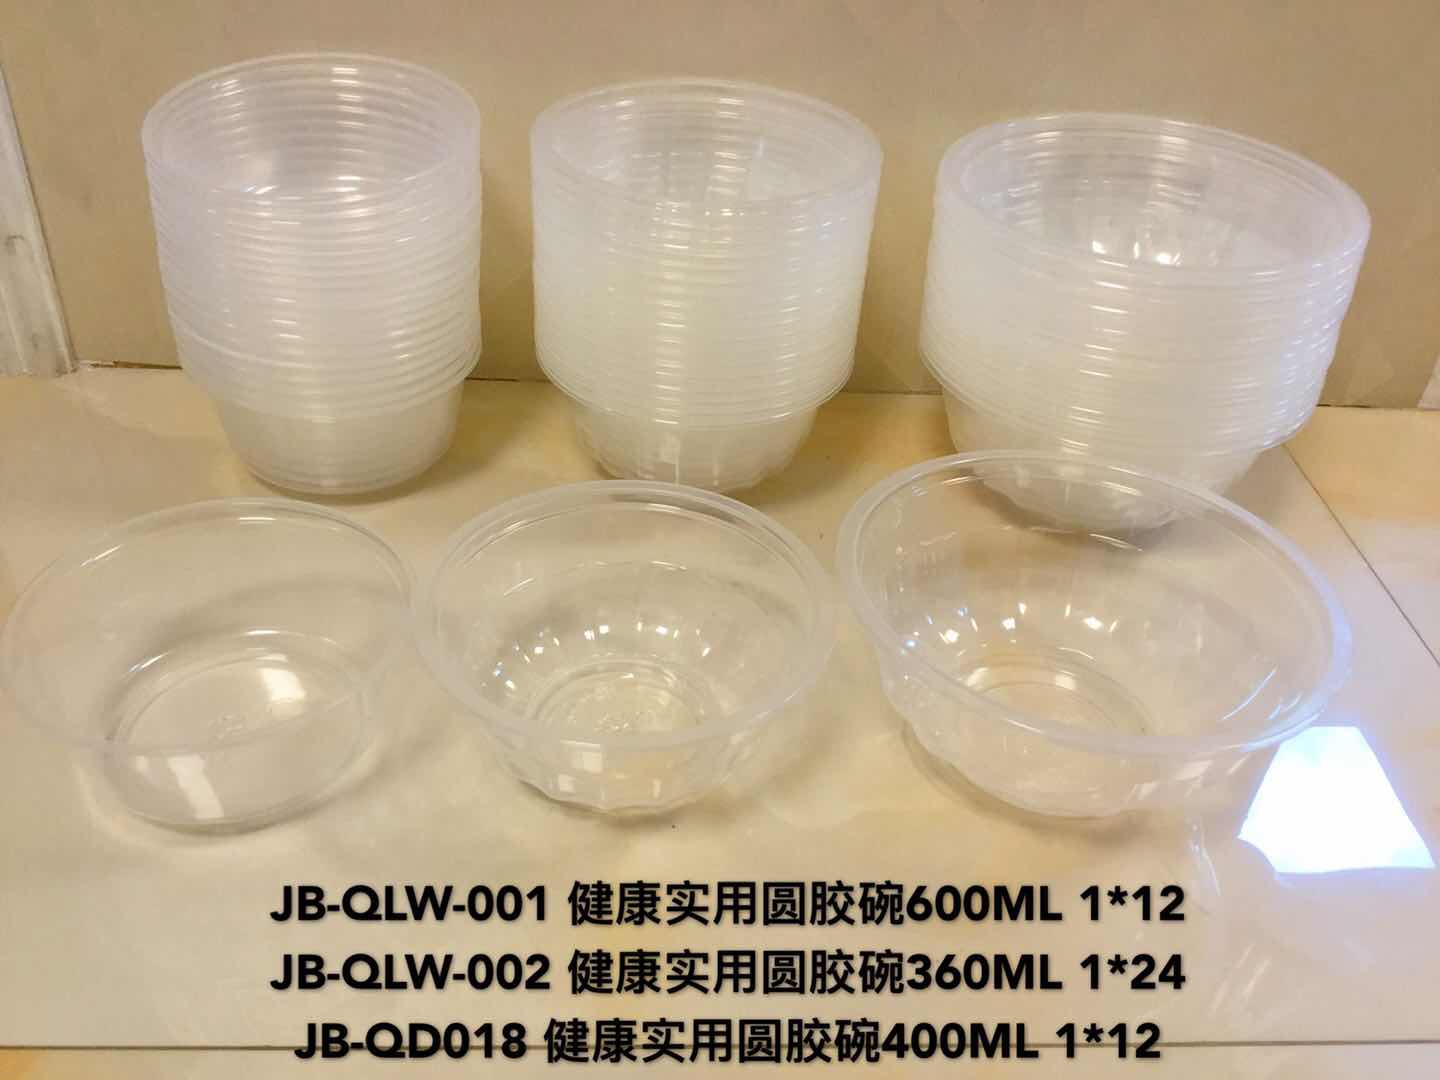 JB-QLW-001、JB-QLW-002、JB-QD018 一次性胶碗